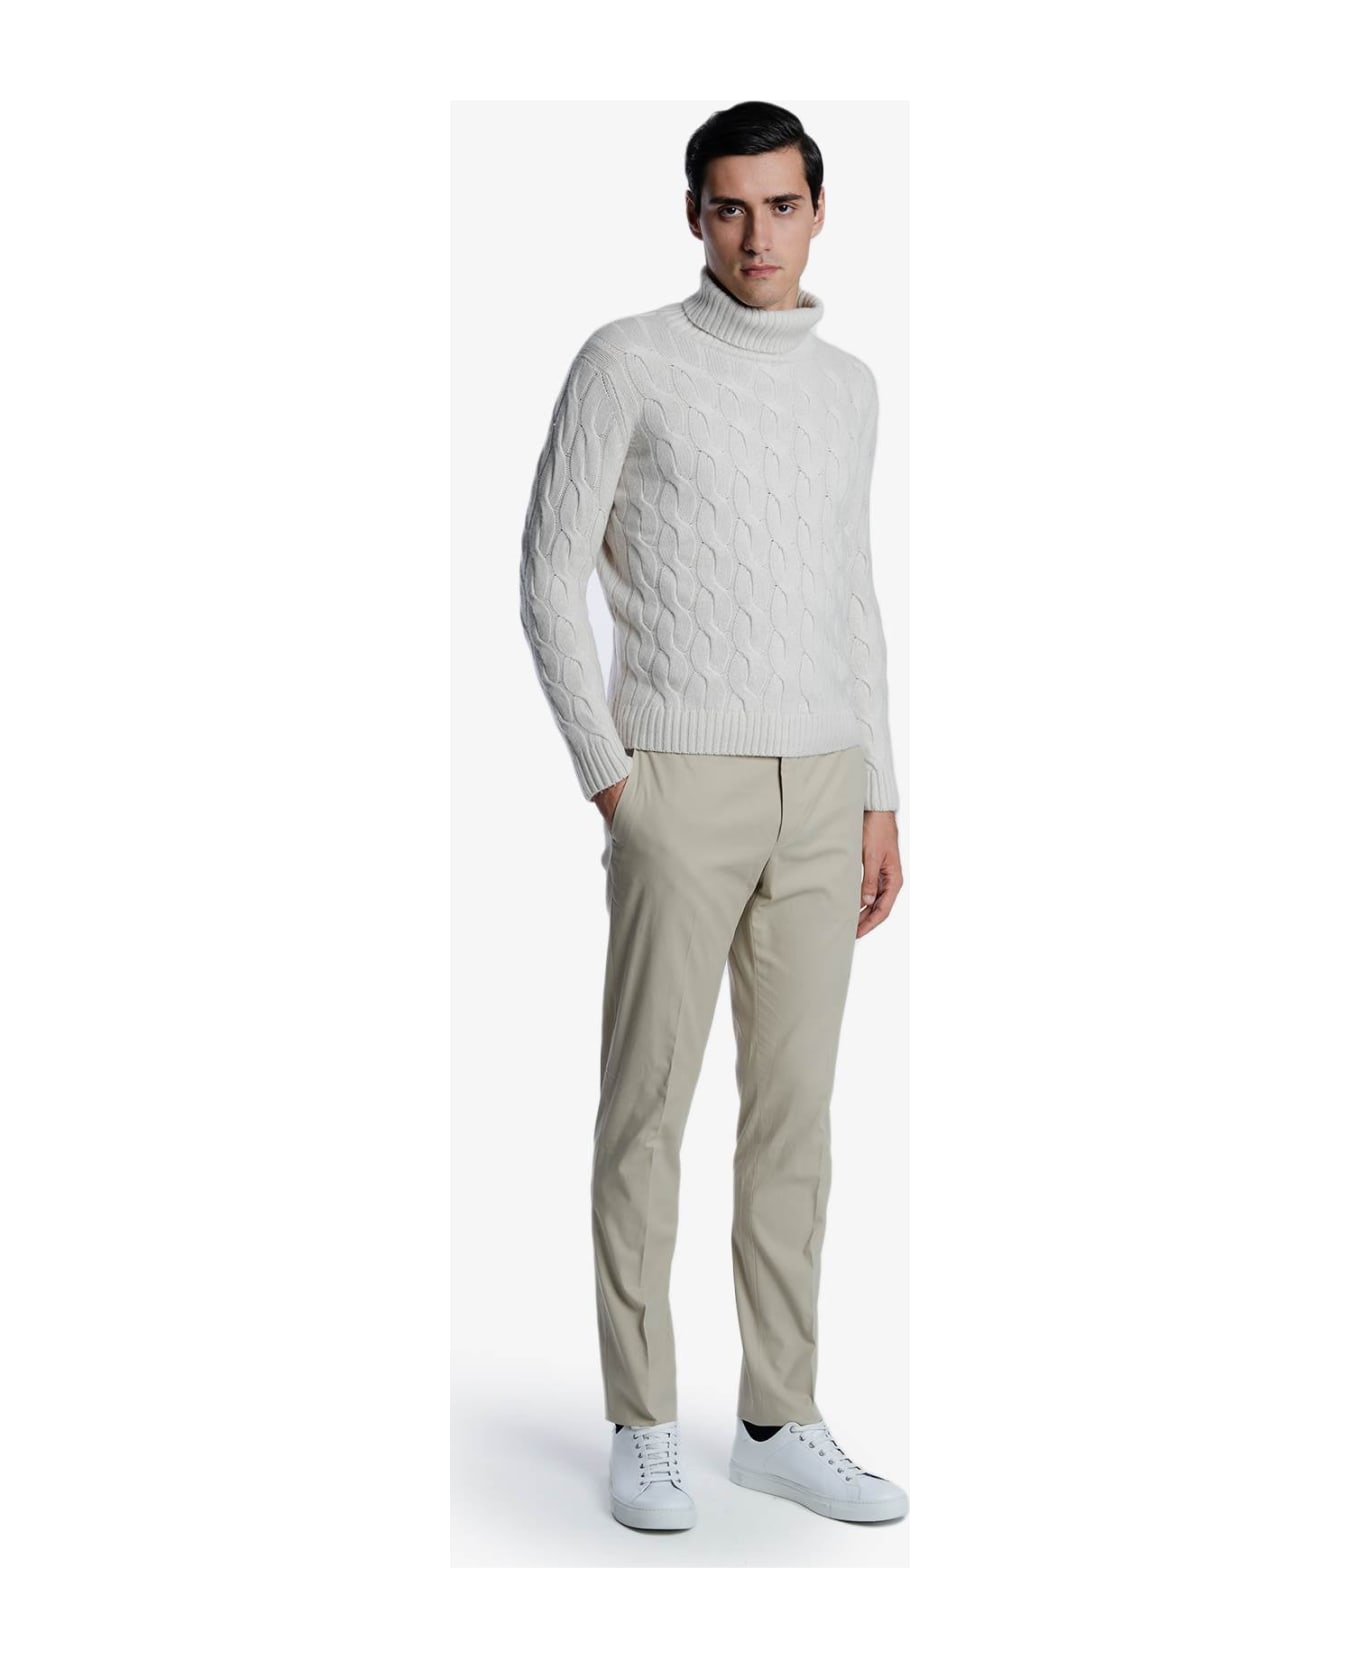 Larusmiani Turtleneck Sweater 'col Du Pillon' Sweater - Ivory ニットウェア